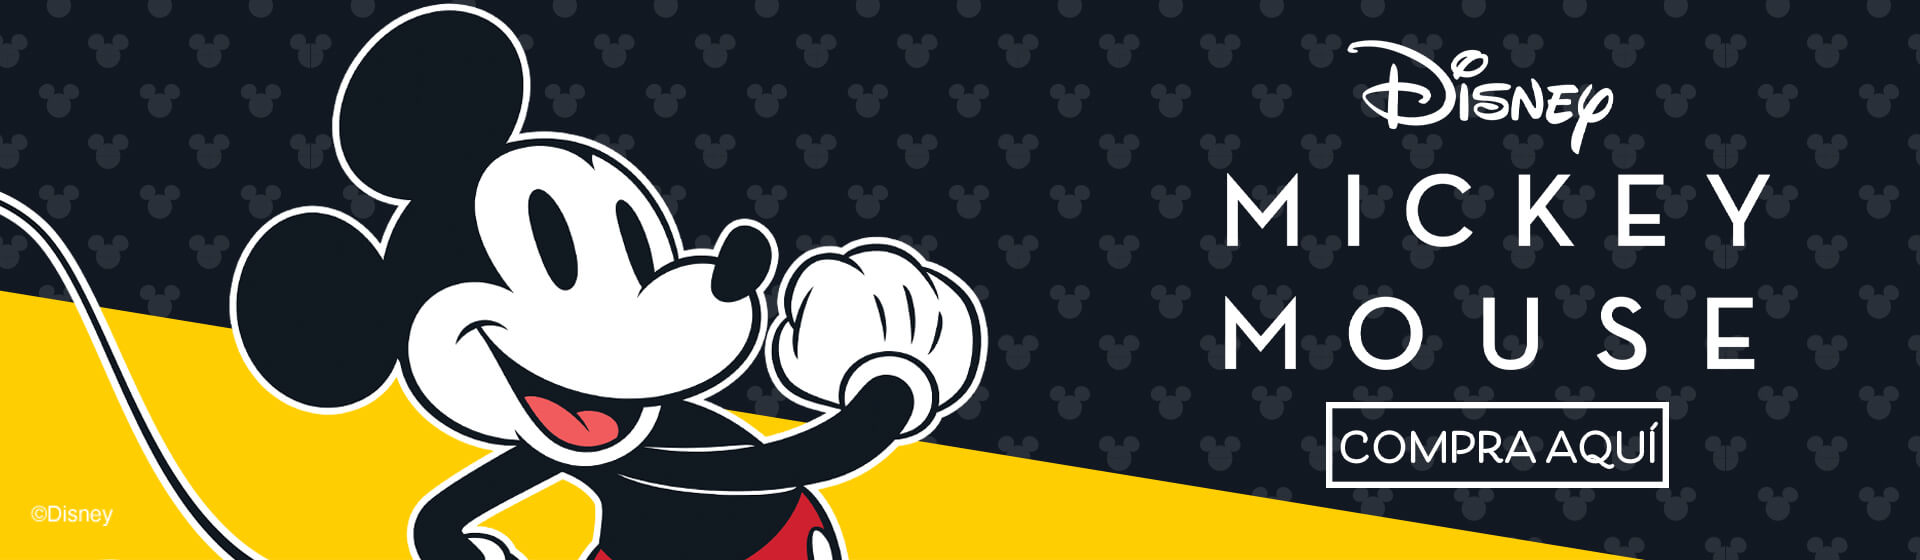 Colección Mickey Mouse​